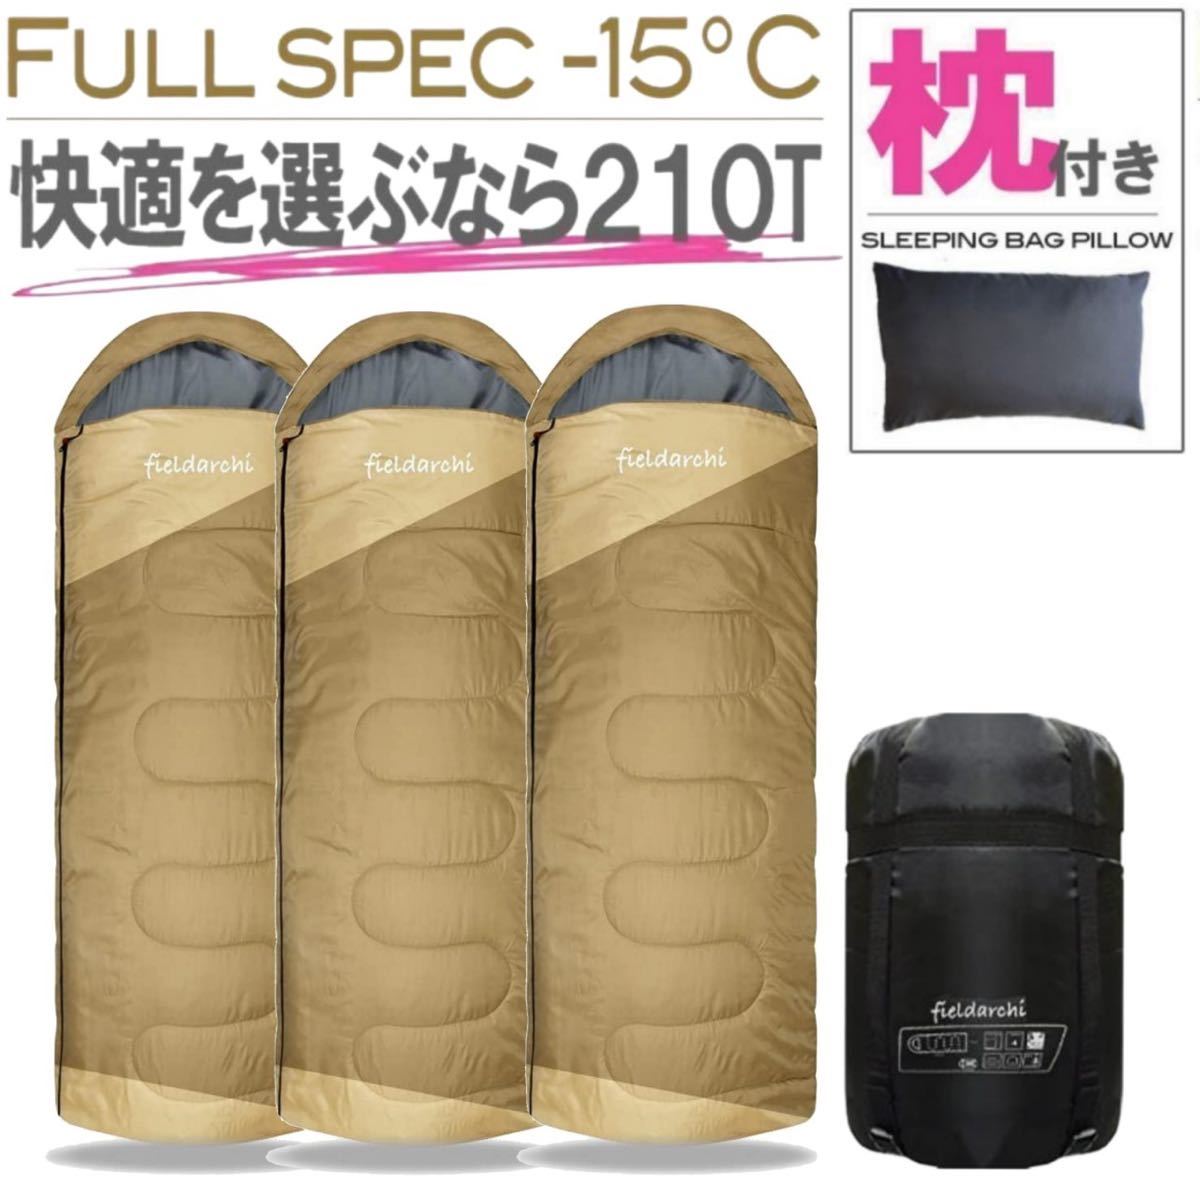 新品未使用 枕付き フルスペック 封筒型寝袋 -15℃ コヨーテ 3個セット